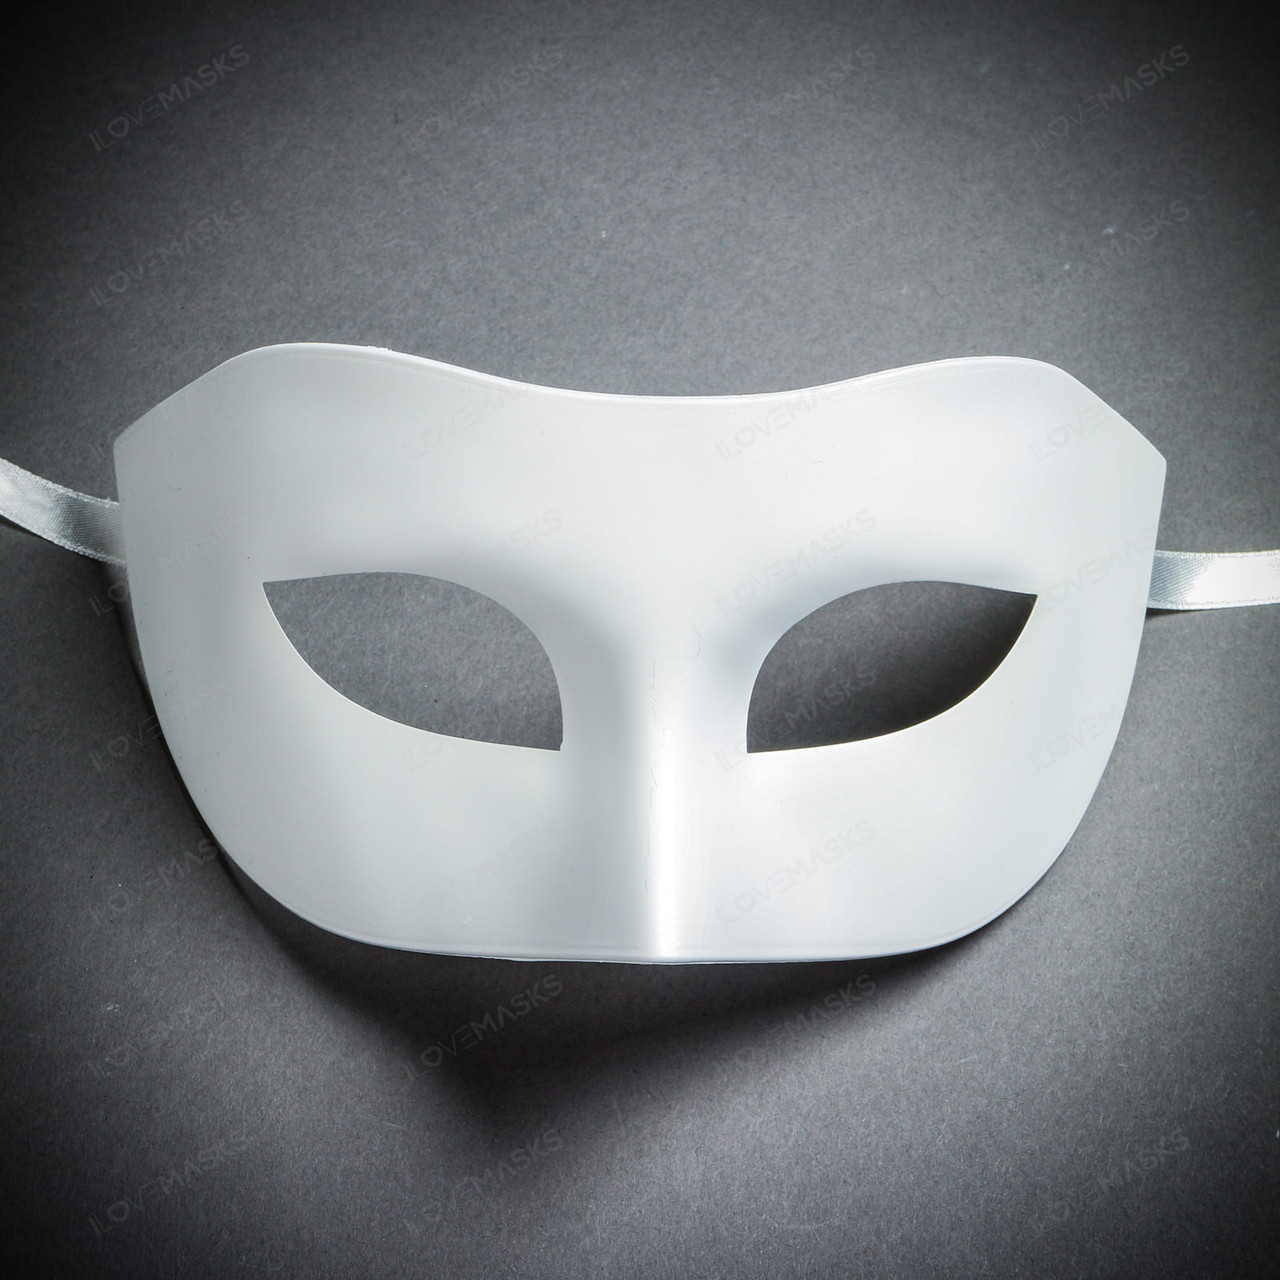 DIY Blank White Masquerade Half Face Venetian Mardi Gras Eye Costume Party Ball